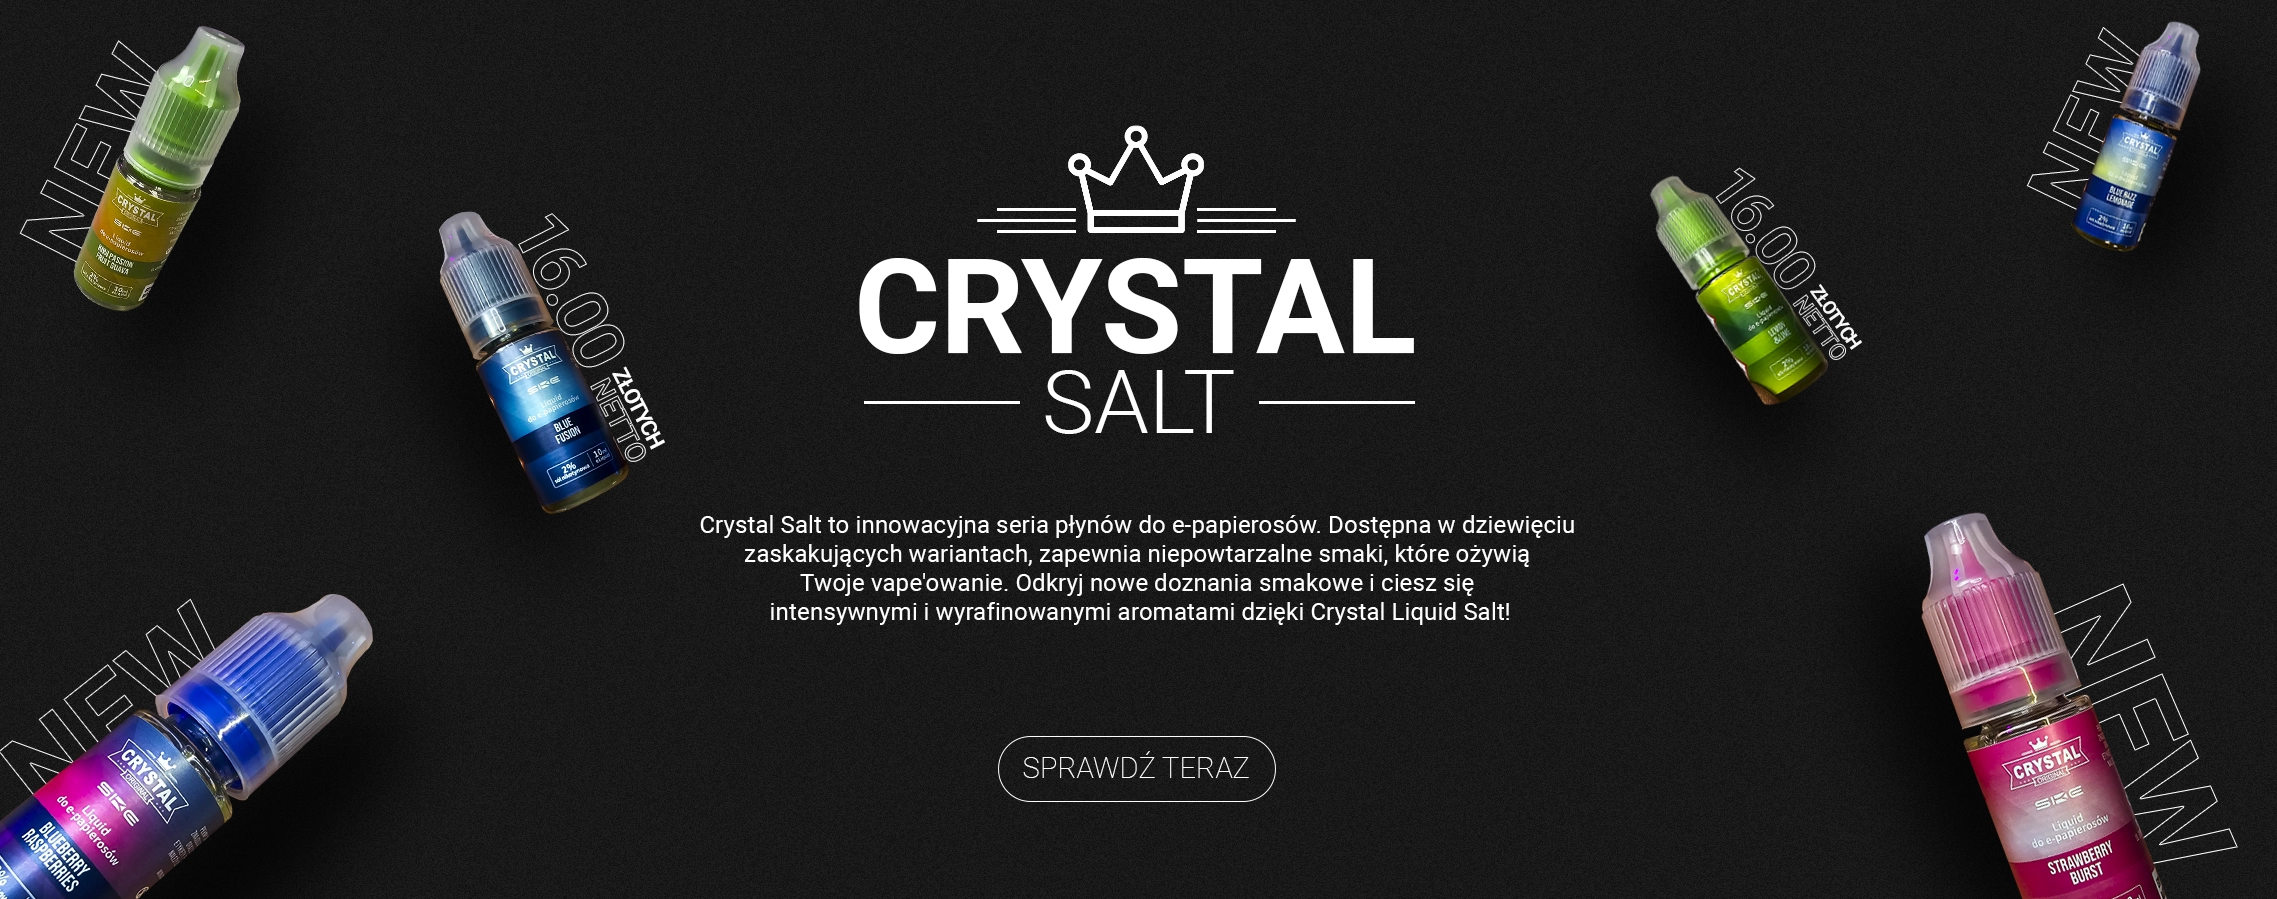 Crystal-Salt-Hurt